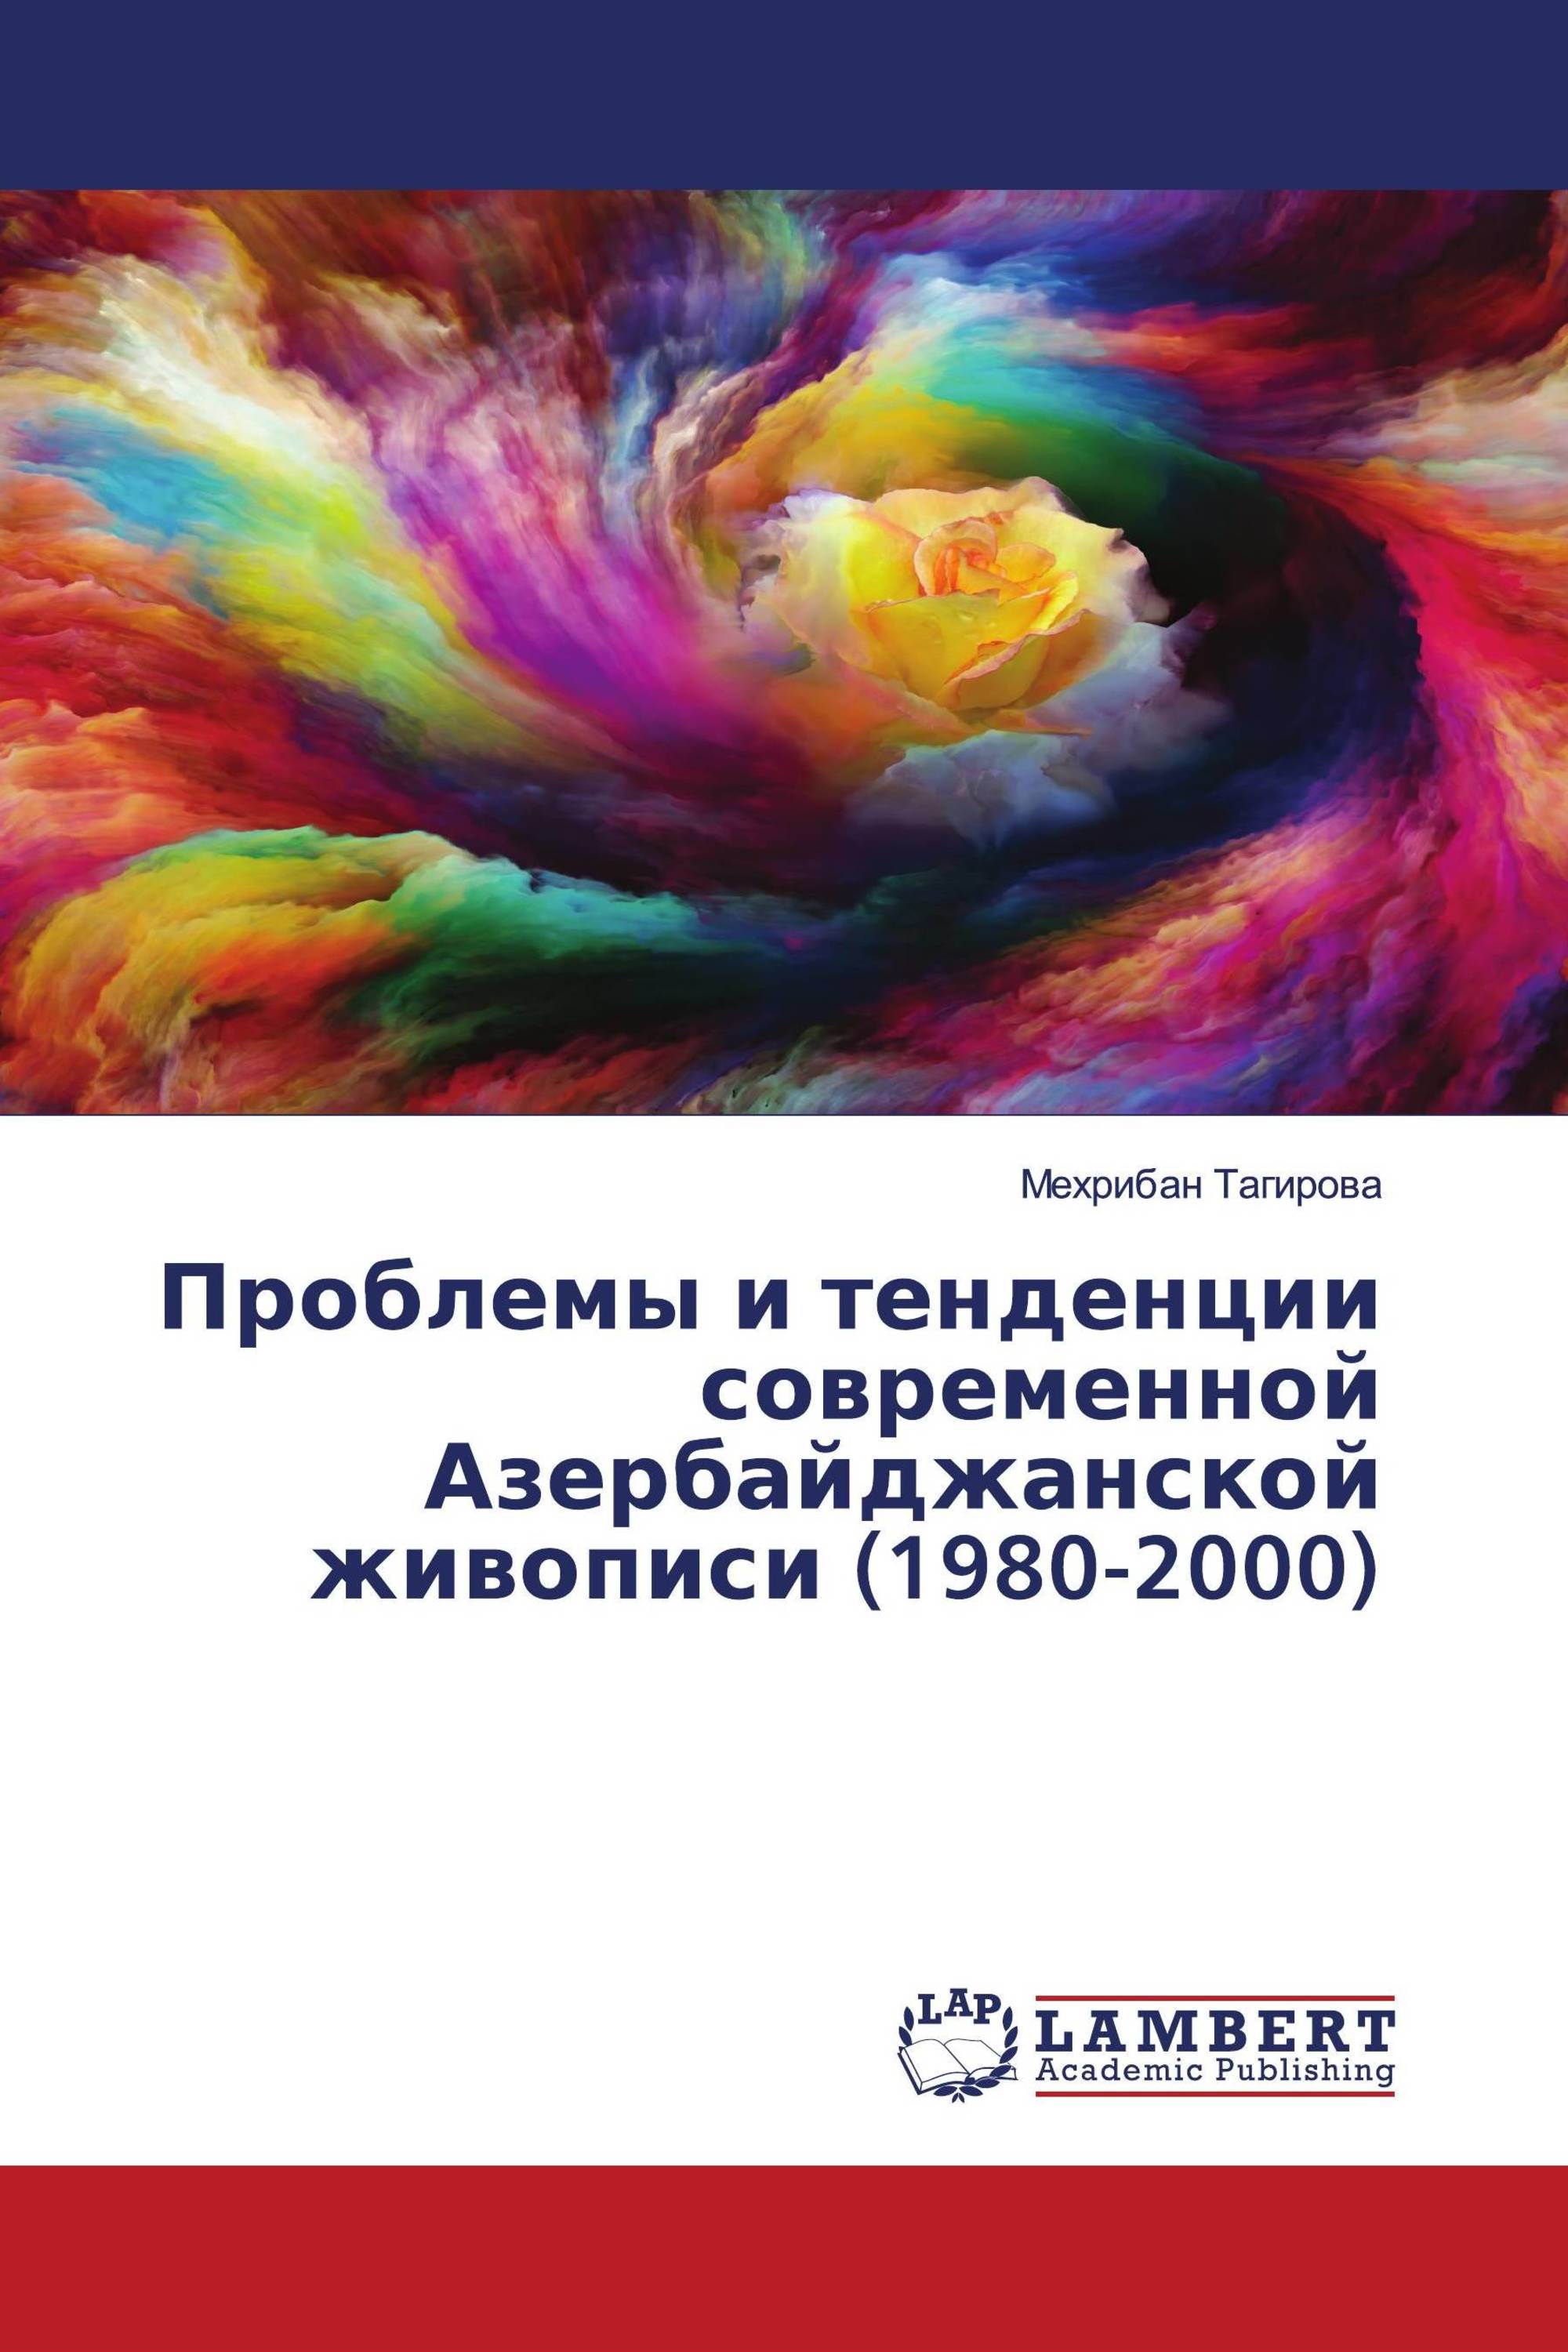 Проблемы и тенденции современной Азербайджанской живописи (1980-2000)